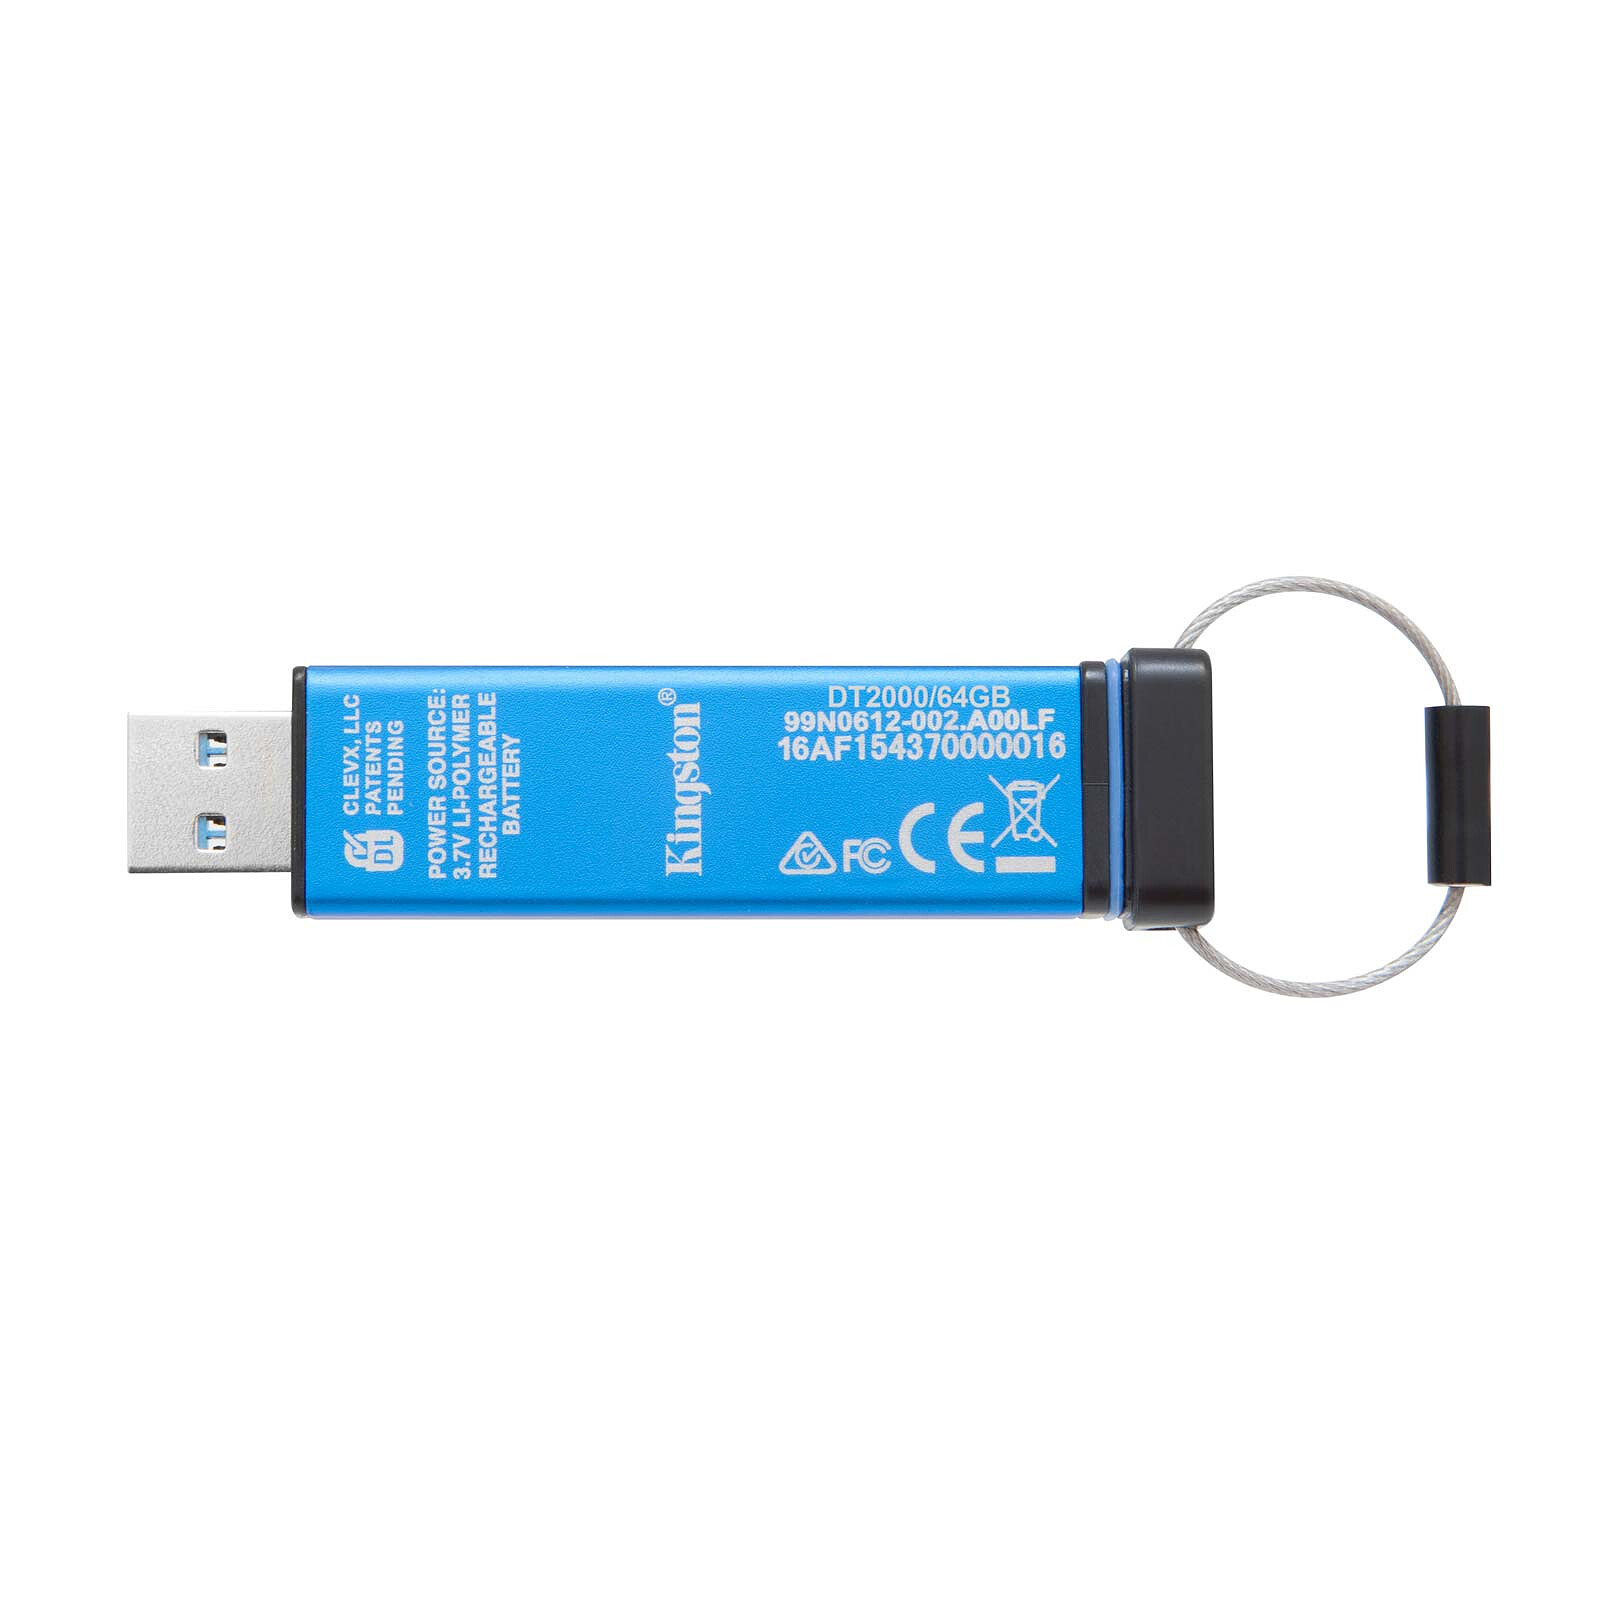 Kingston DataTraveler Exodia Onyx 256 GB - Memoria USB - LDLC